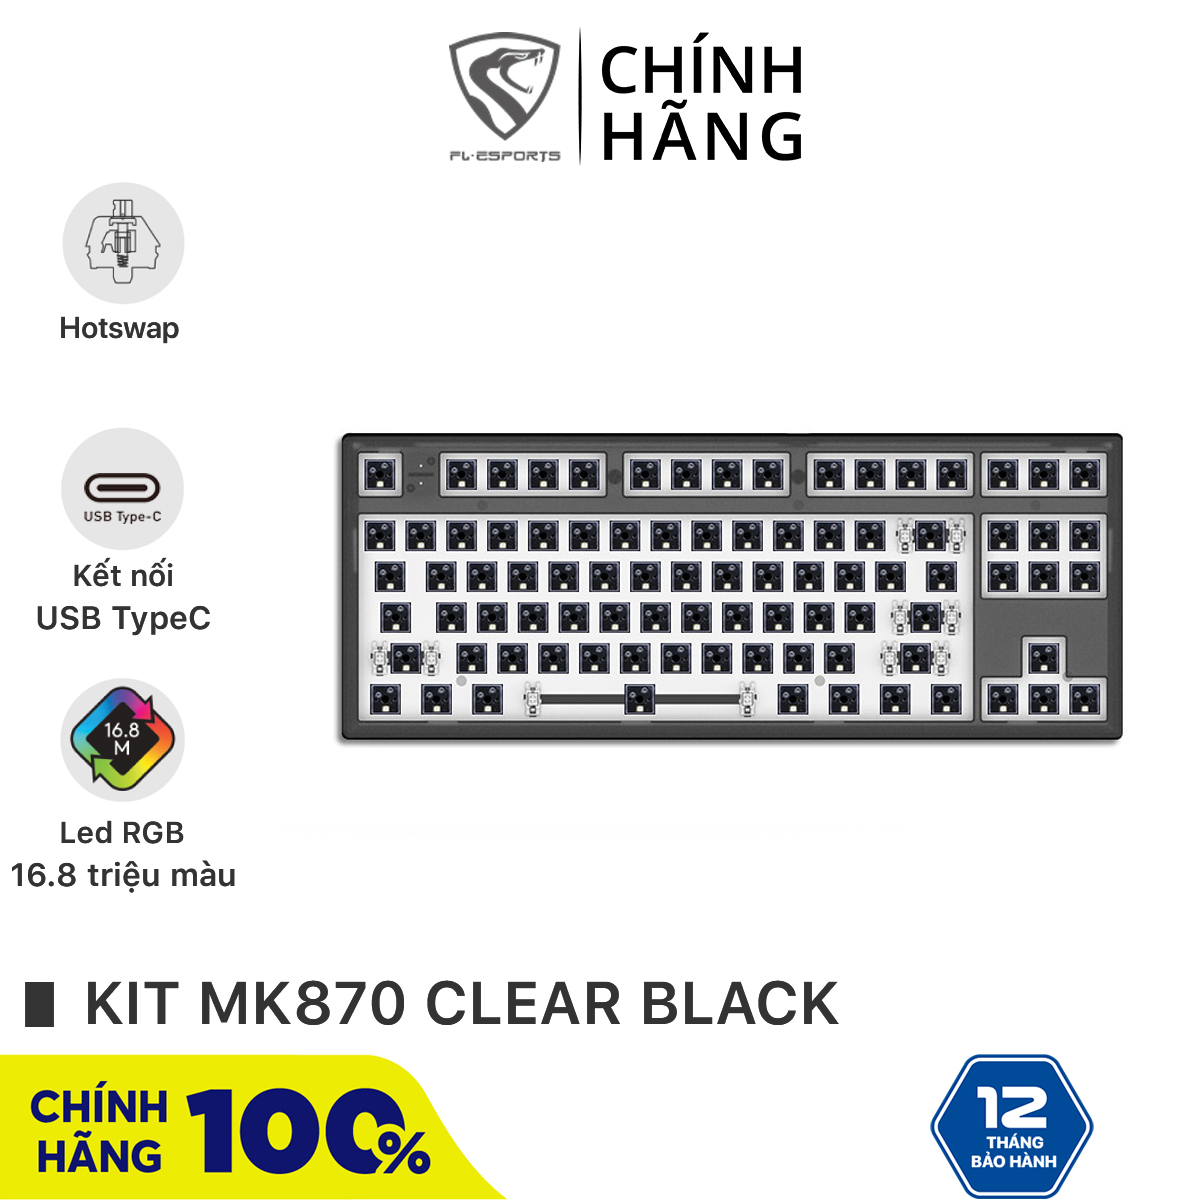 Bộ kit bàn phím cơ FL-Esports MK870 1 Mode Clear Black - Hotswap - Led RGB - Sẵn foam - Bảo hành 12 tháng